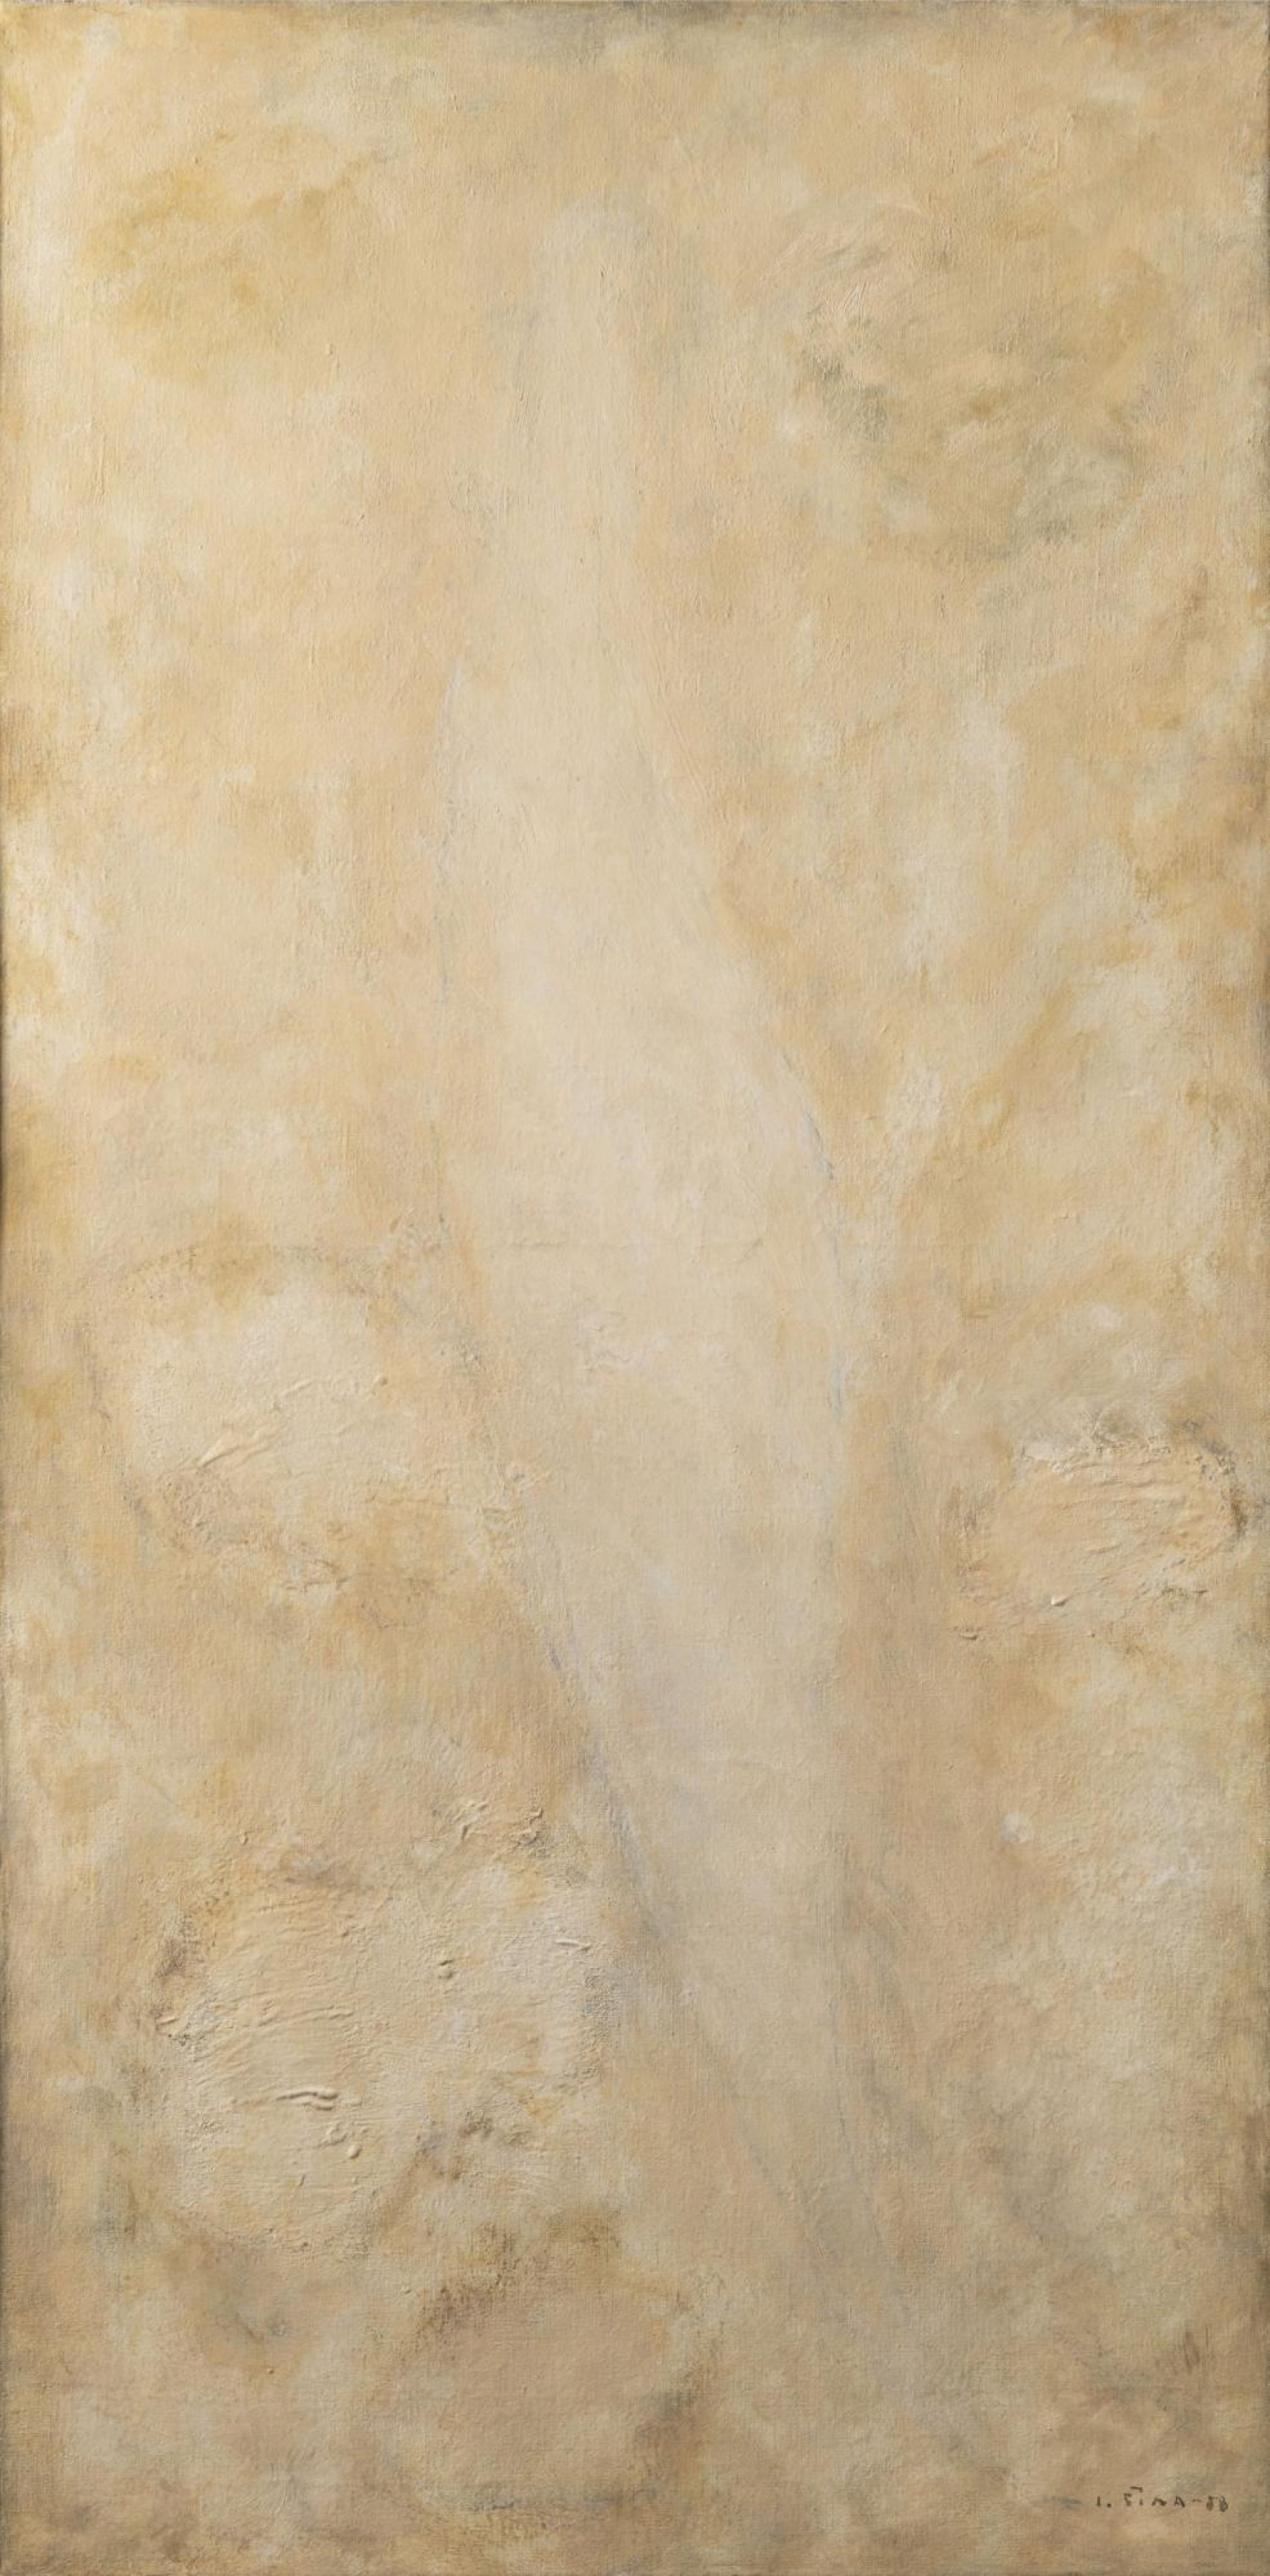 Josef Šíma: Midi le just (Poledník), 1958, olej na plátně, 110 x 55 cm, cena: 8 060 000 Kč, Arthouse Hejtmánek 14. 12. 2021